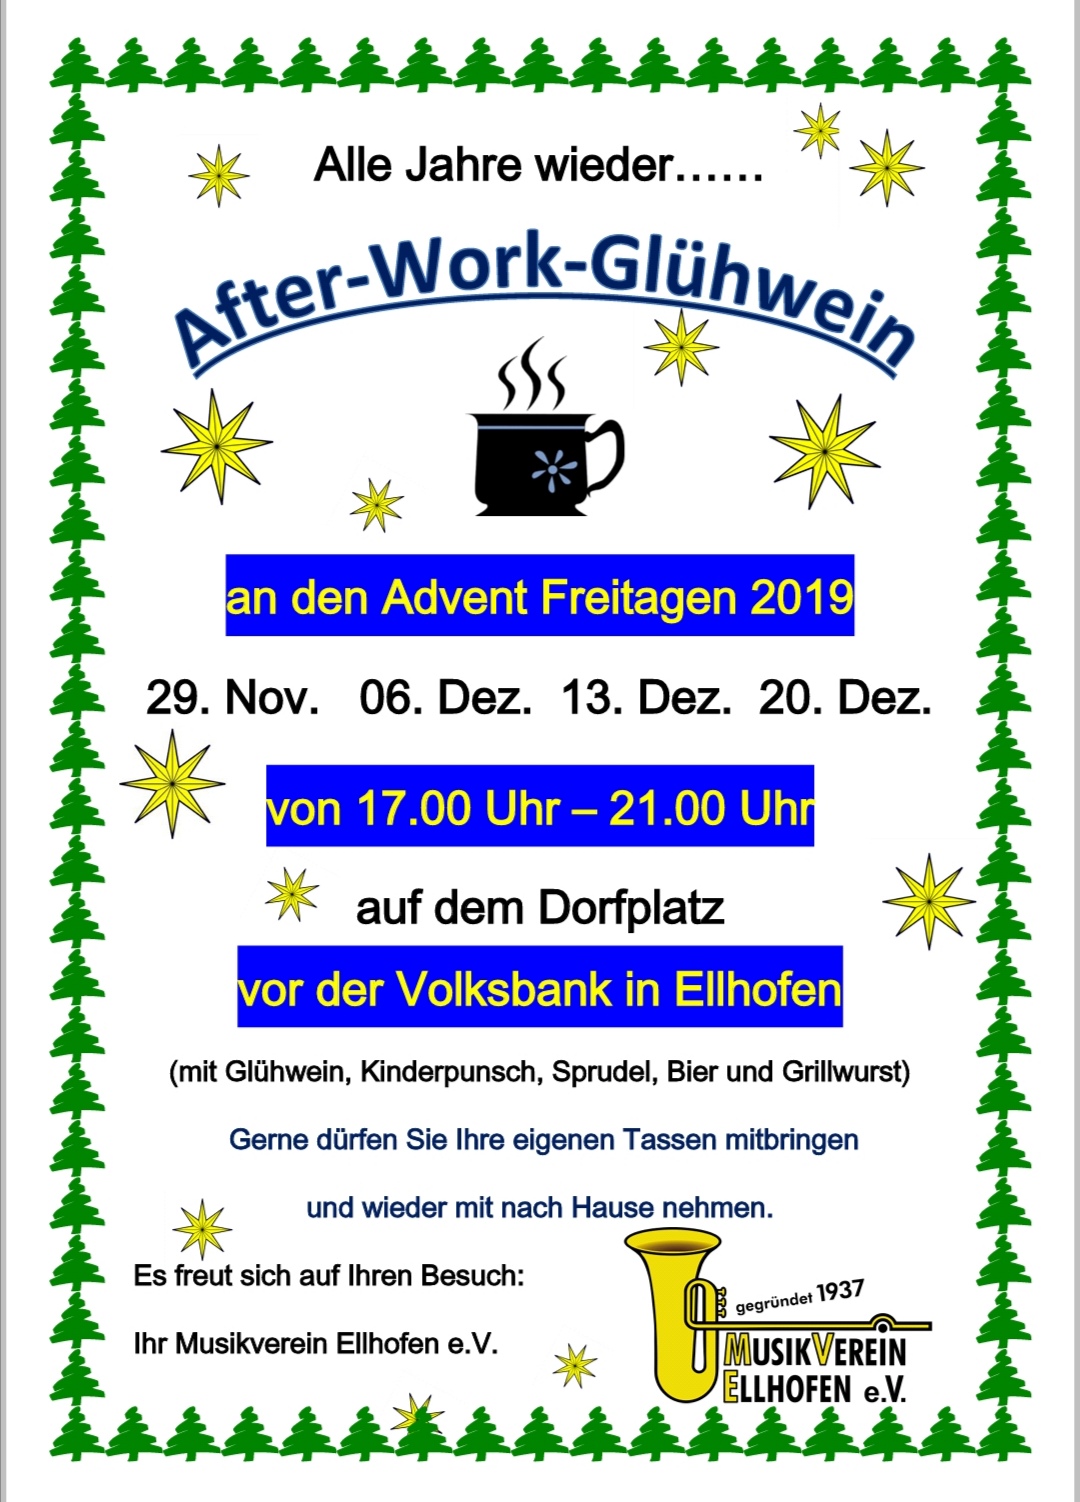 After-Work-Glühwein 2019